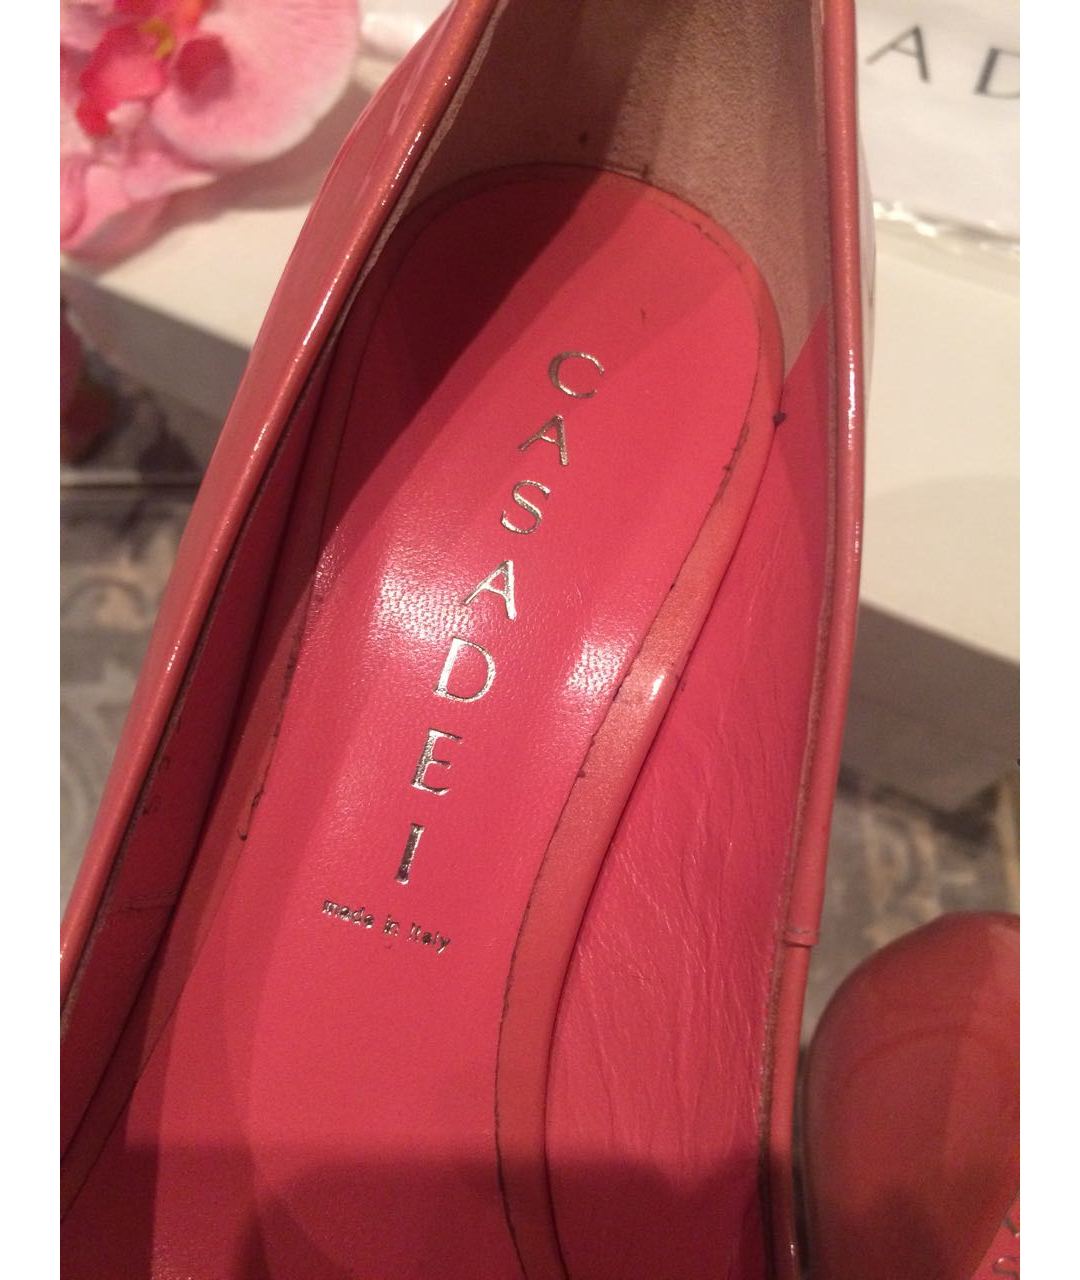 CASADEI Розовые кожаные туфли, фото 5